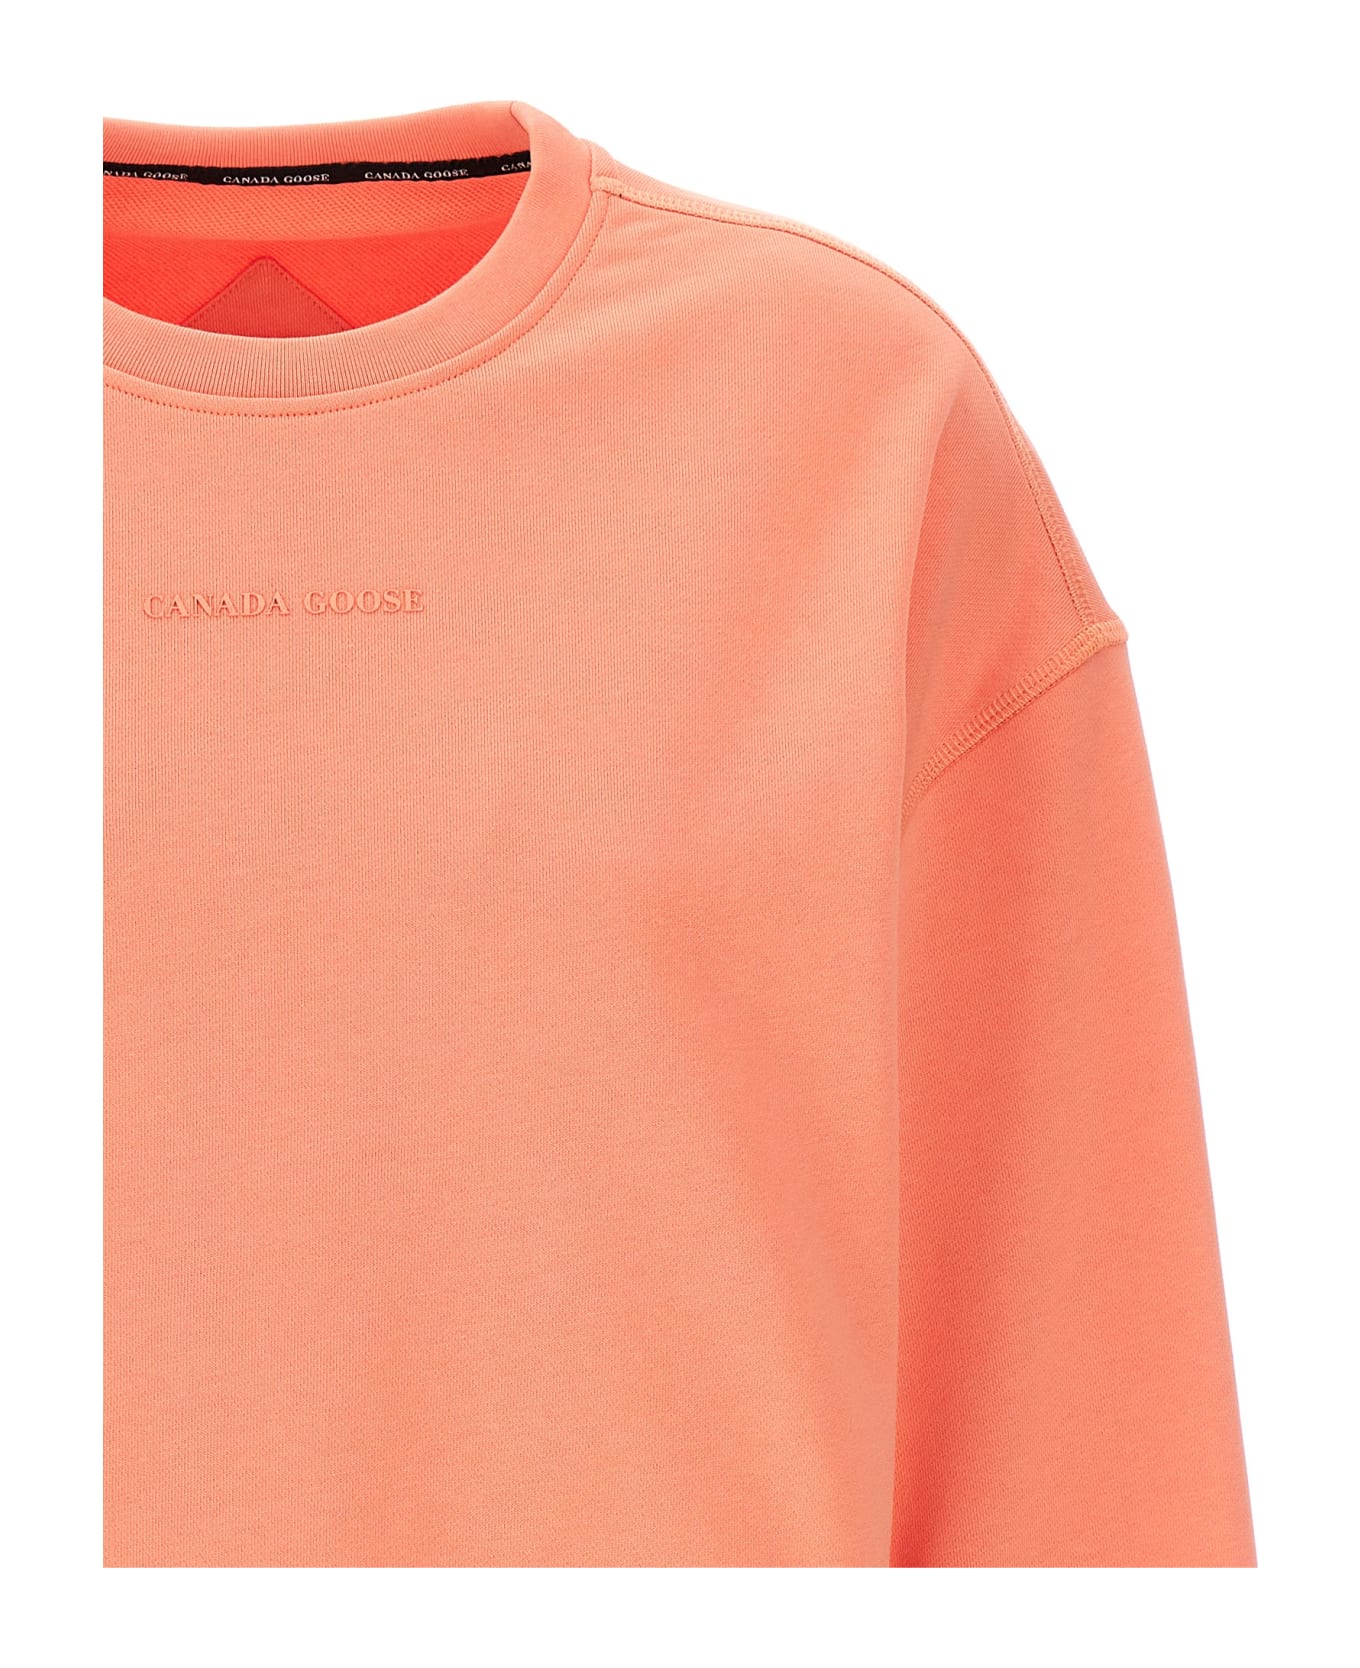 Canada Goose 'muskoka' Sweatshirt - Pink フリース